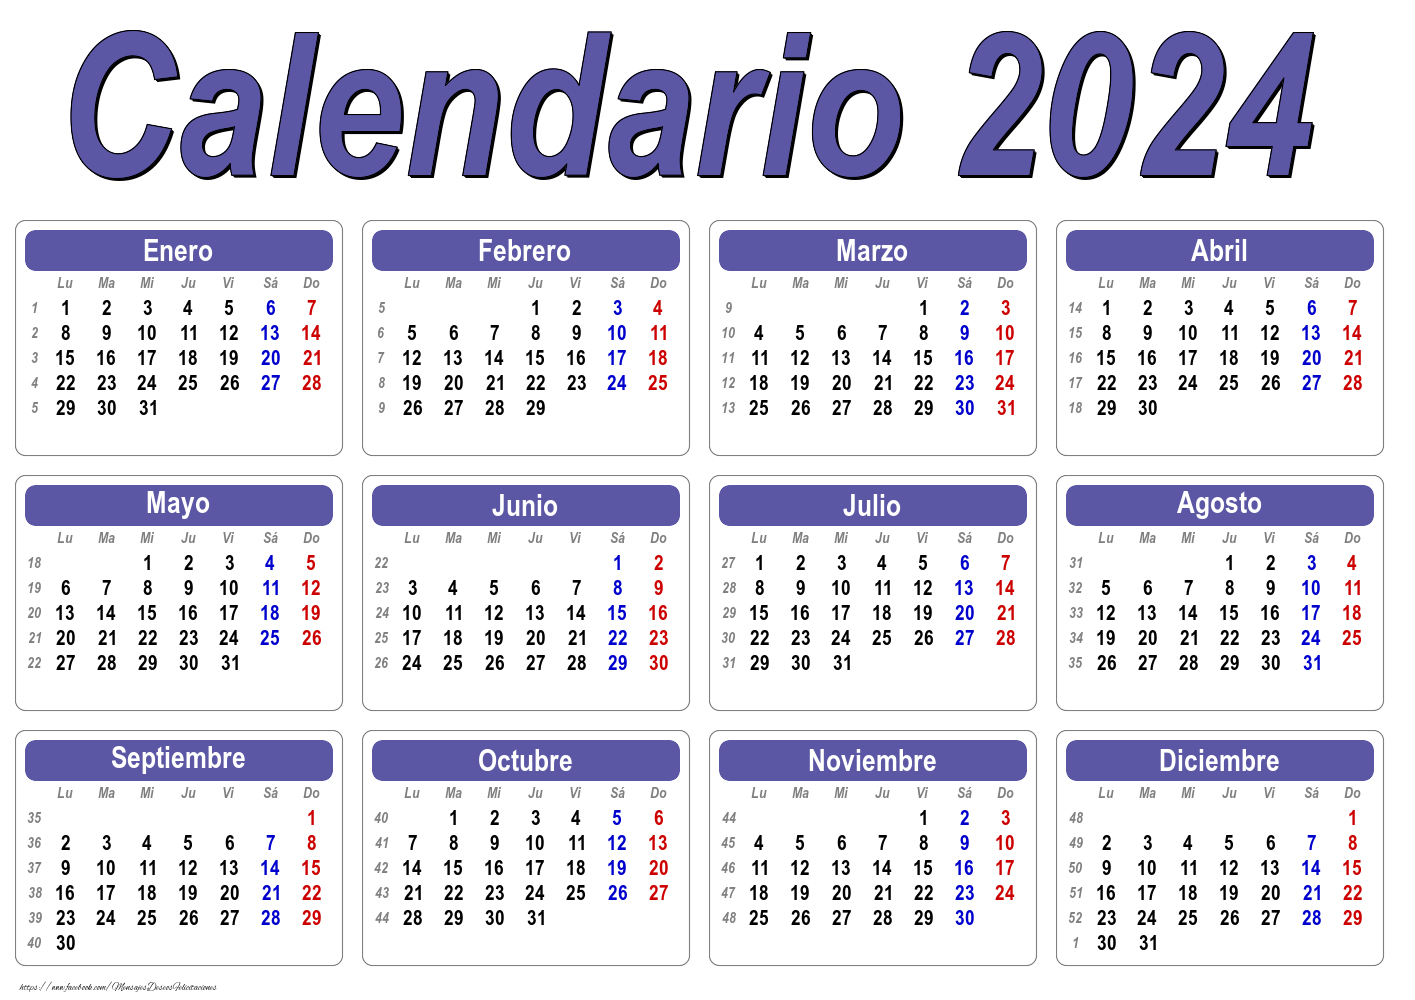 Felicitaciones calendarios - Calendario 2024 - Clásico - Modelo 001 - mensajesdeseosfelicitaciones.com